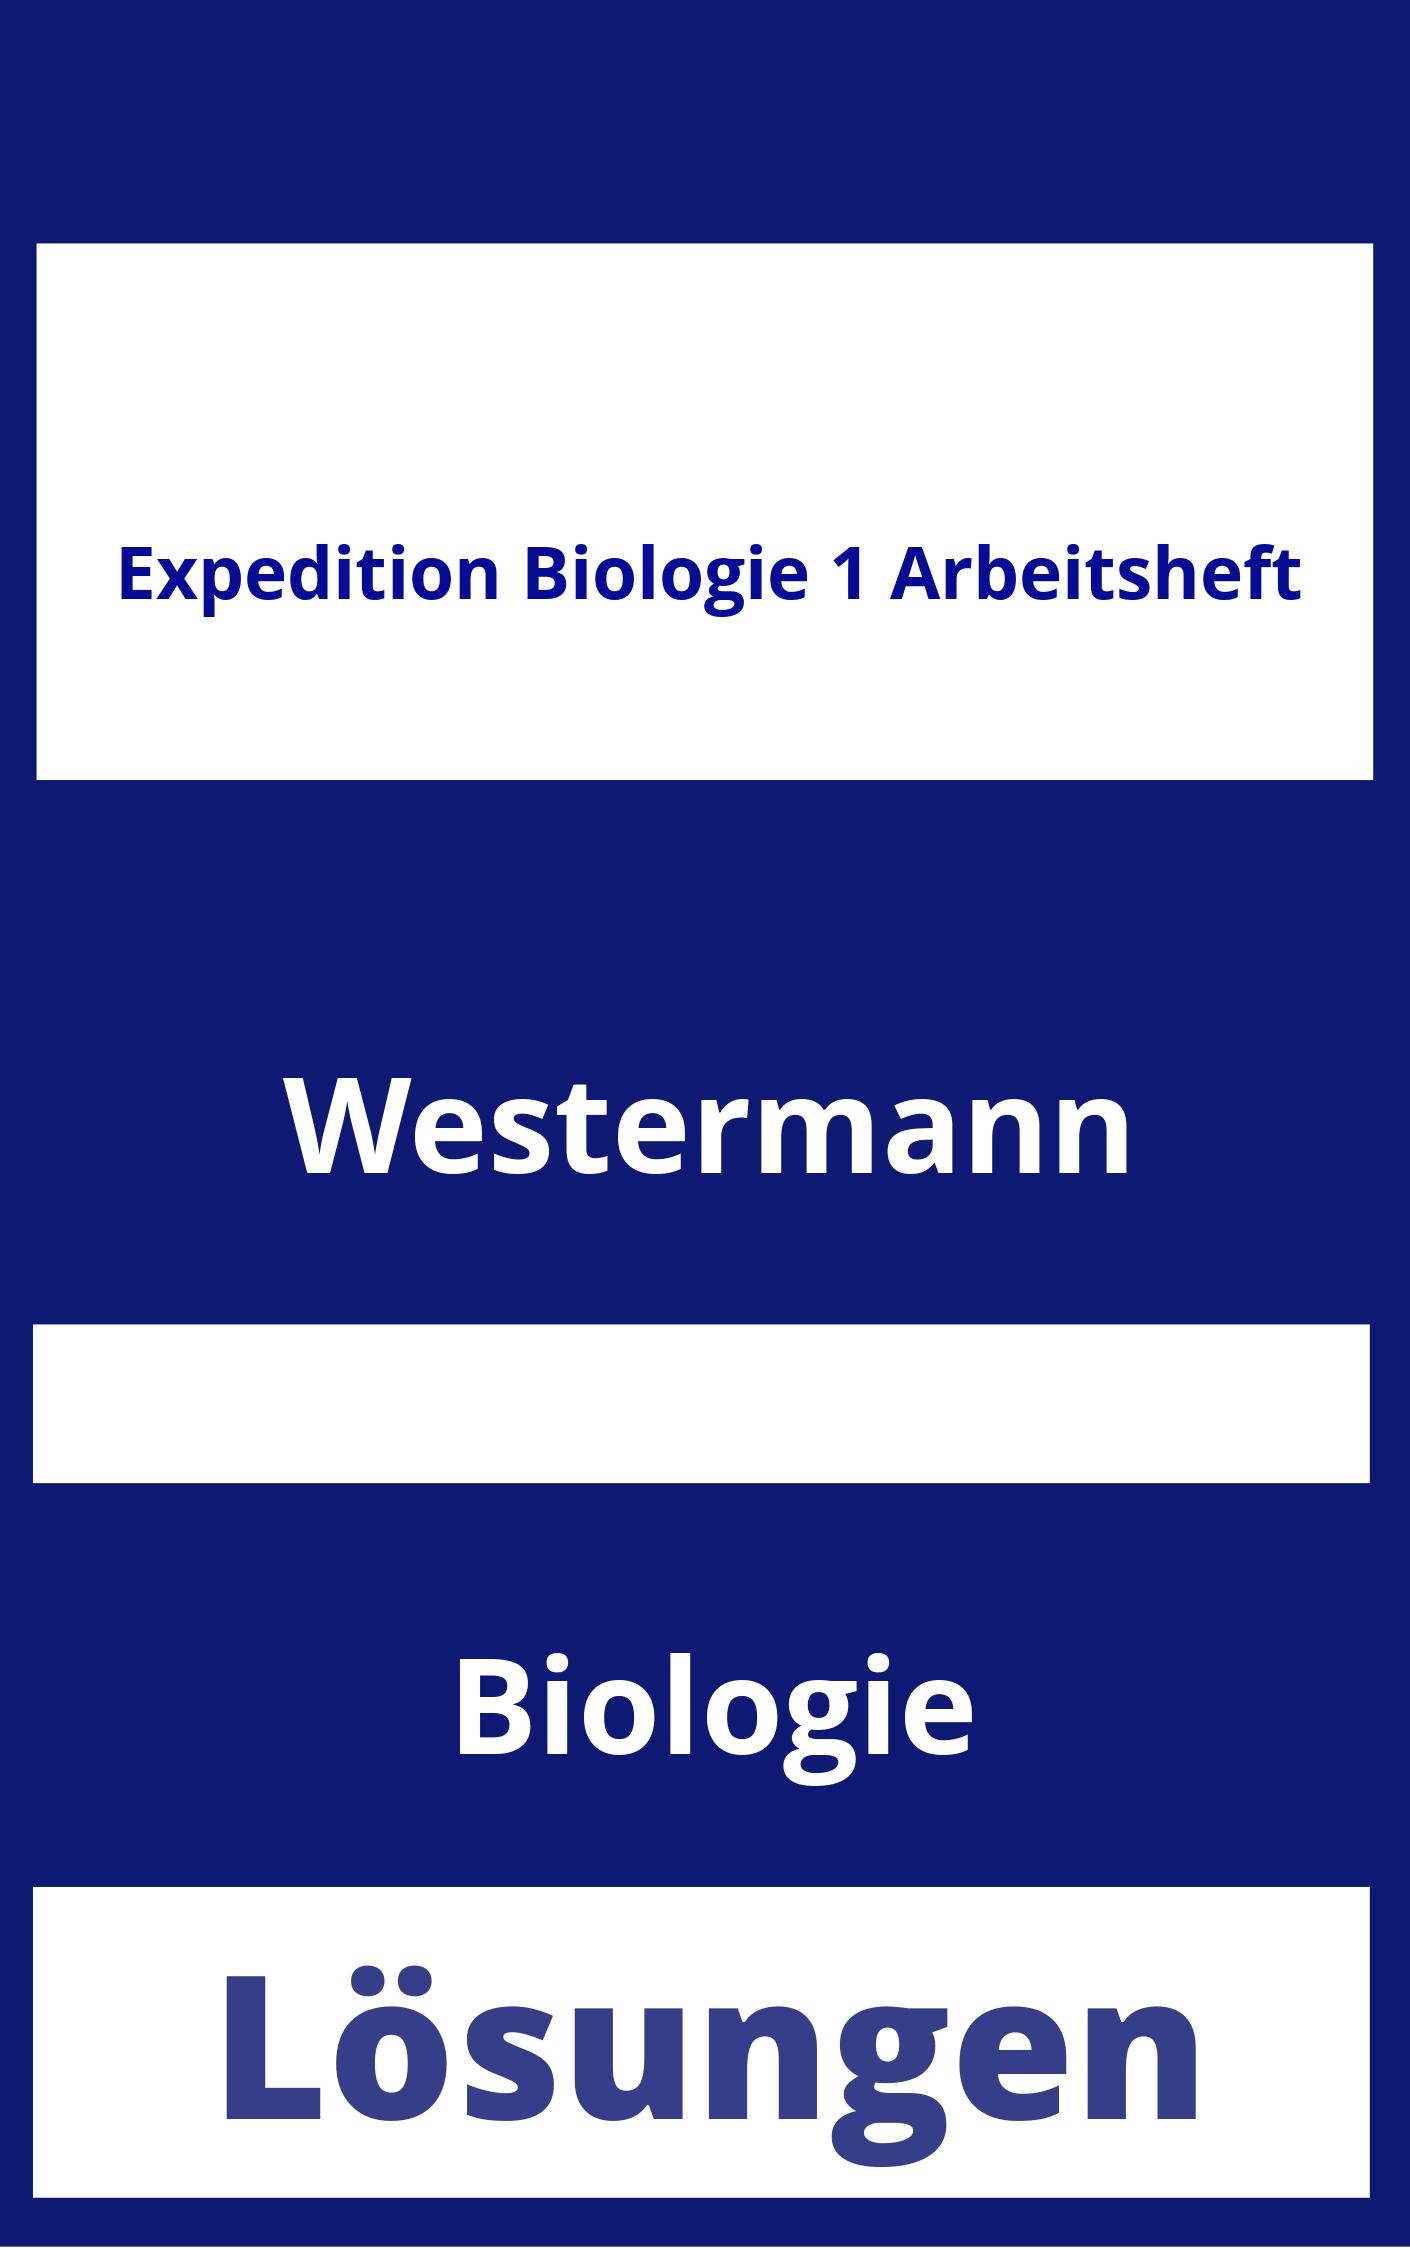 Expedition Biologie 1 Arbeitsheft Lösungen PDF